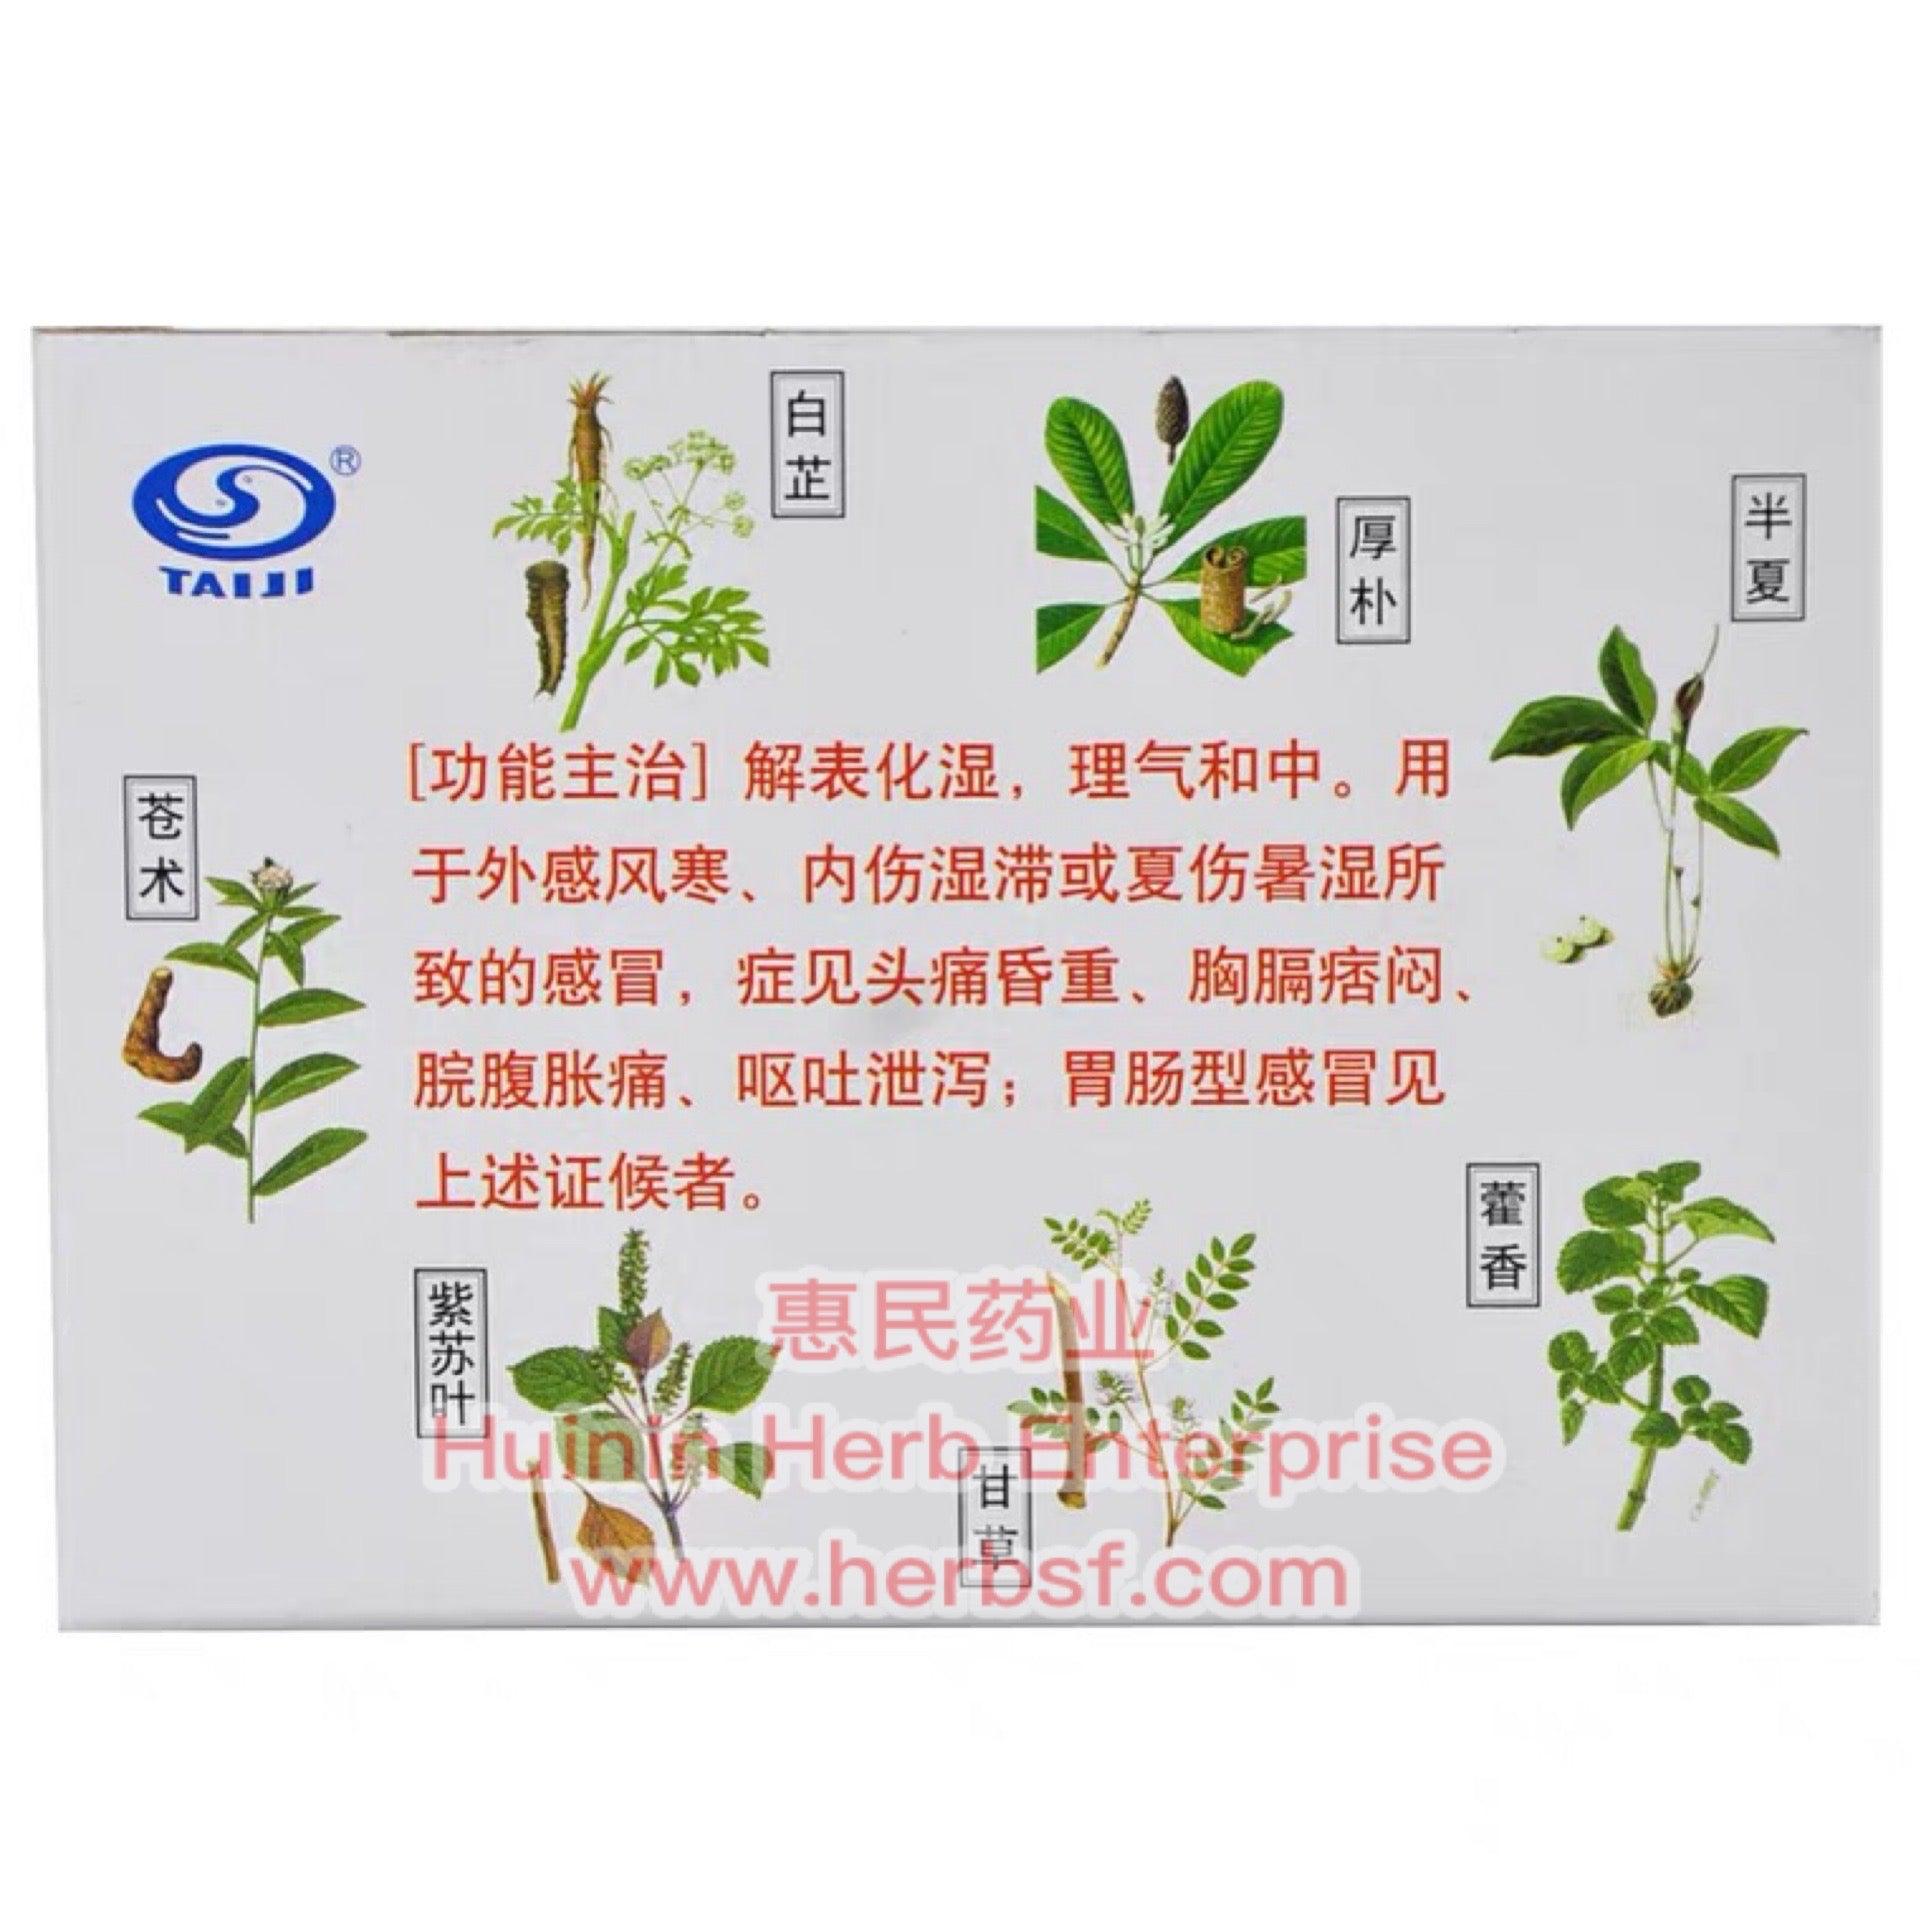 Huoxiang Zhengqi Koufuye - Huimin Herb Online, LLC